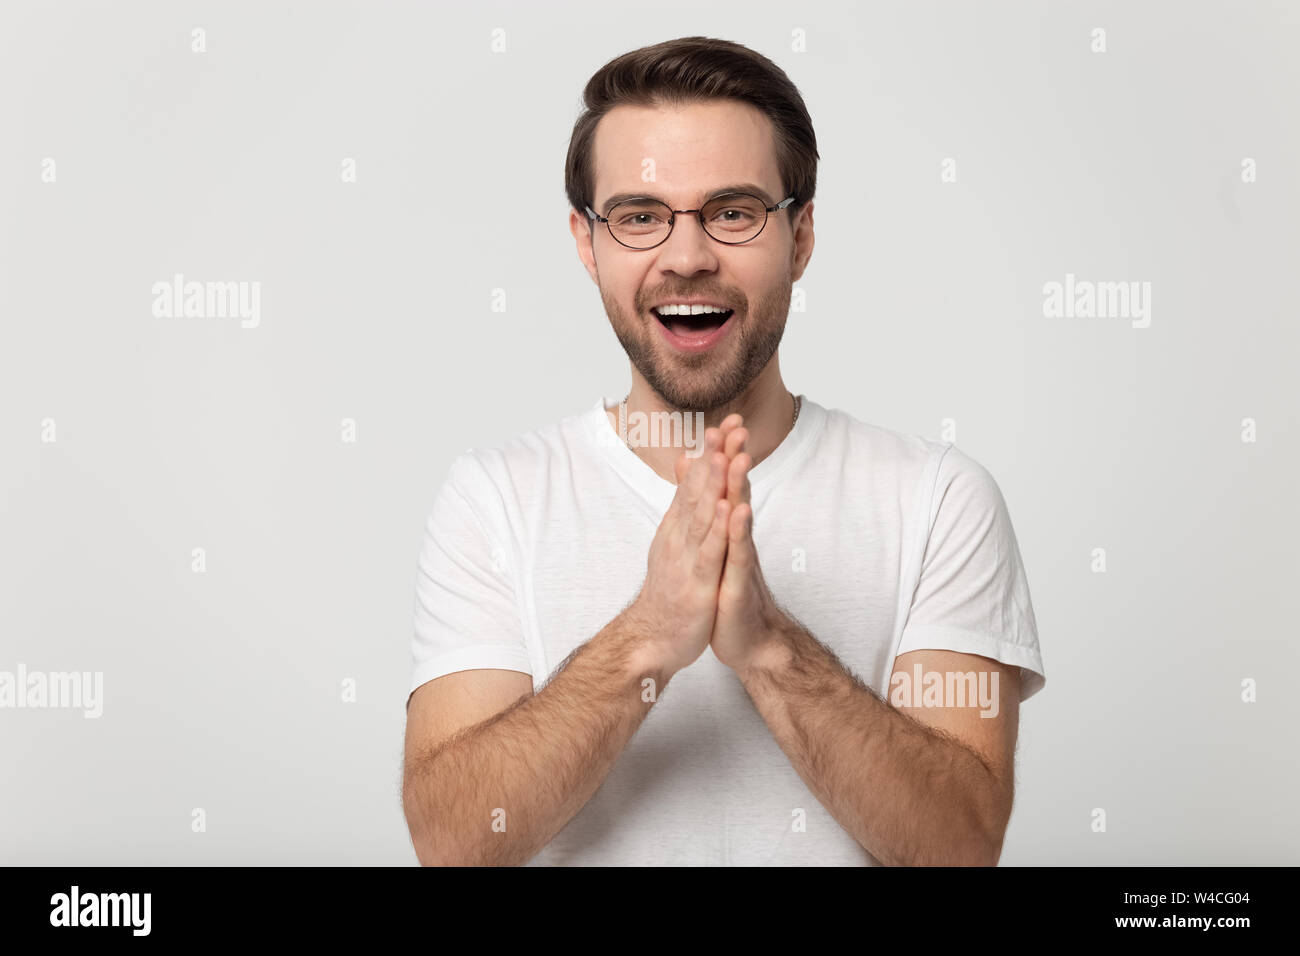 Mann fühlt sich glücklich Halten Sie die Handflächen zusammen genießen Sie glückliche Moment Stockfoto